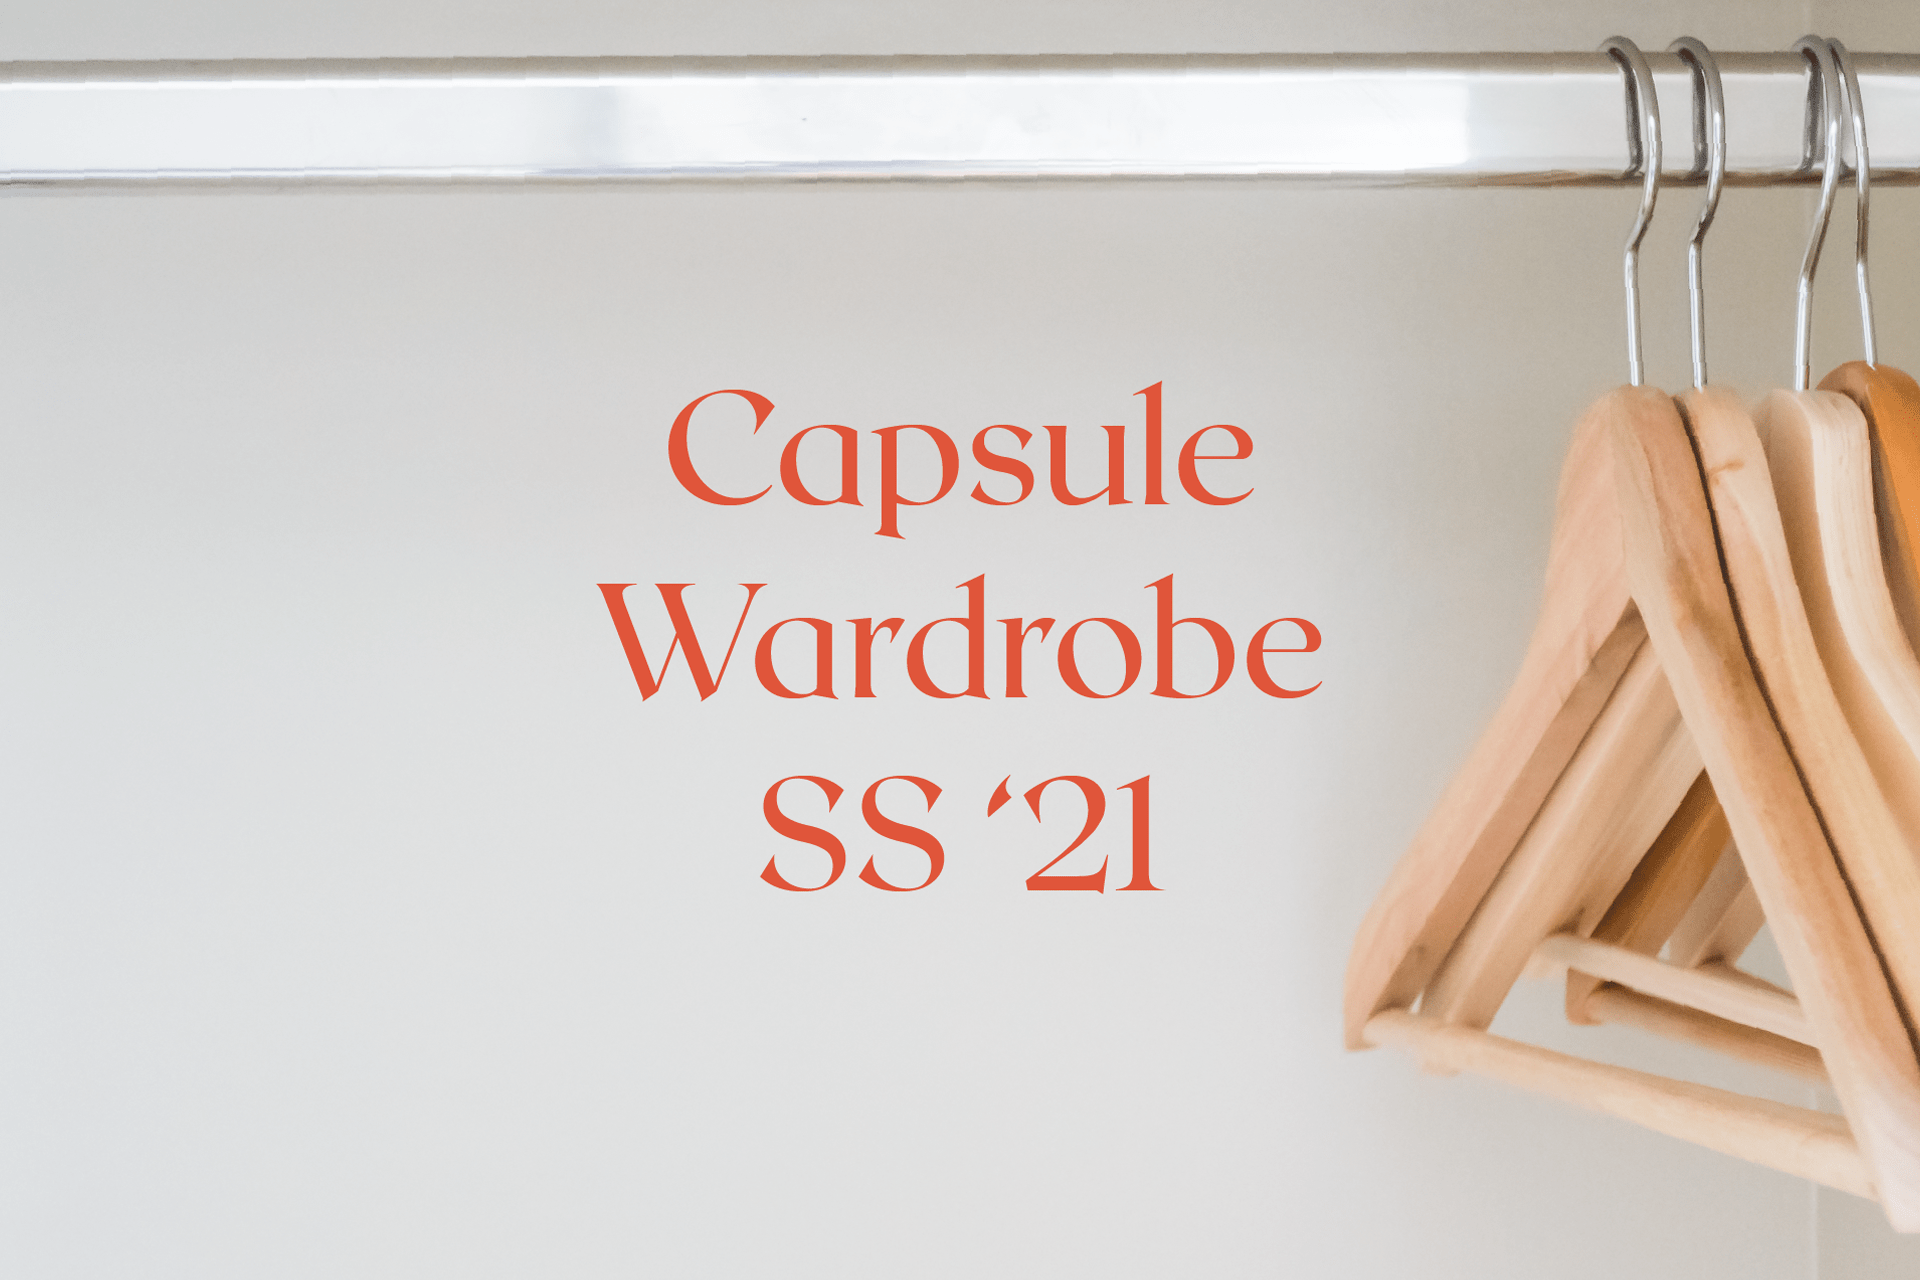 Capsule Wardrobe SS ’21